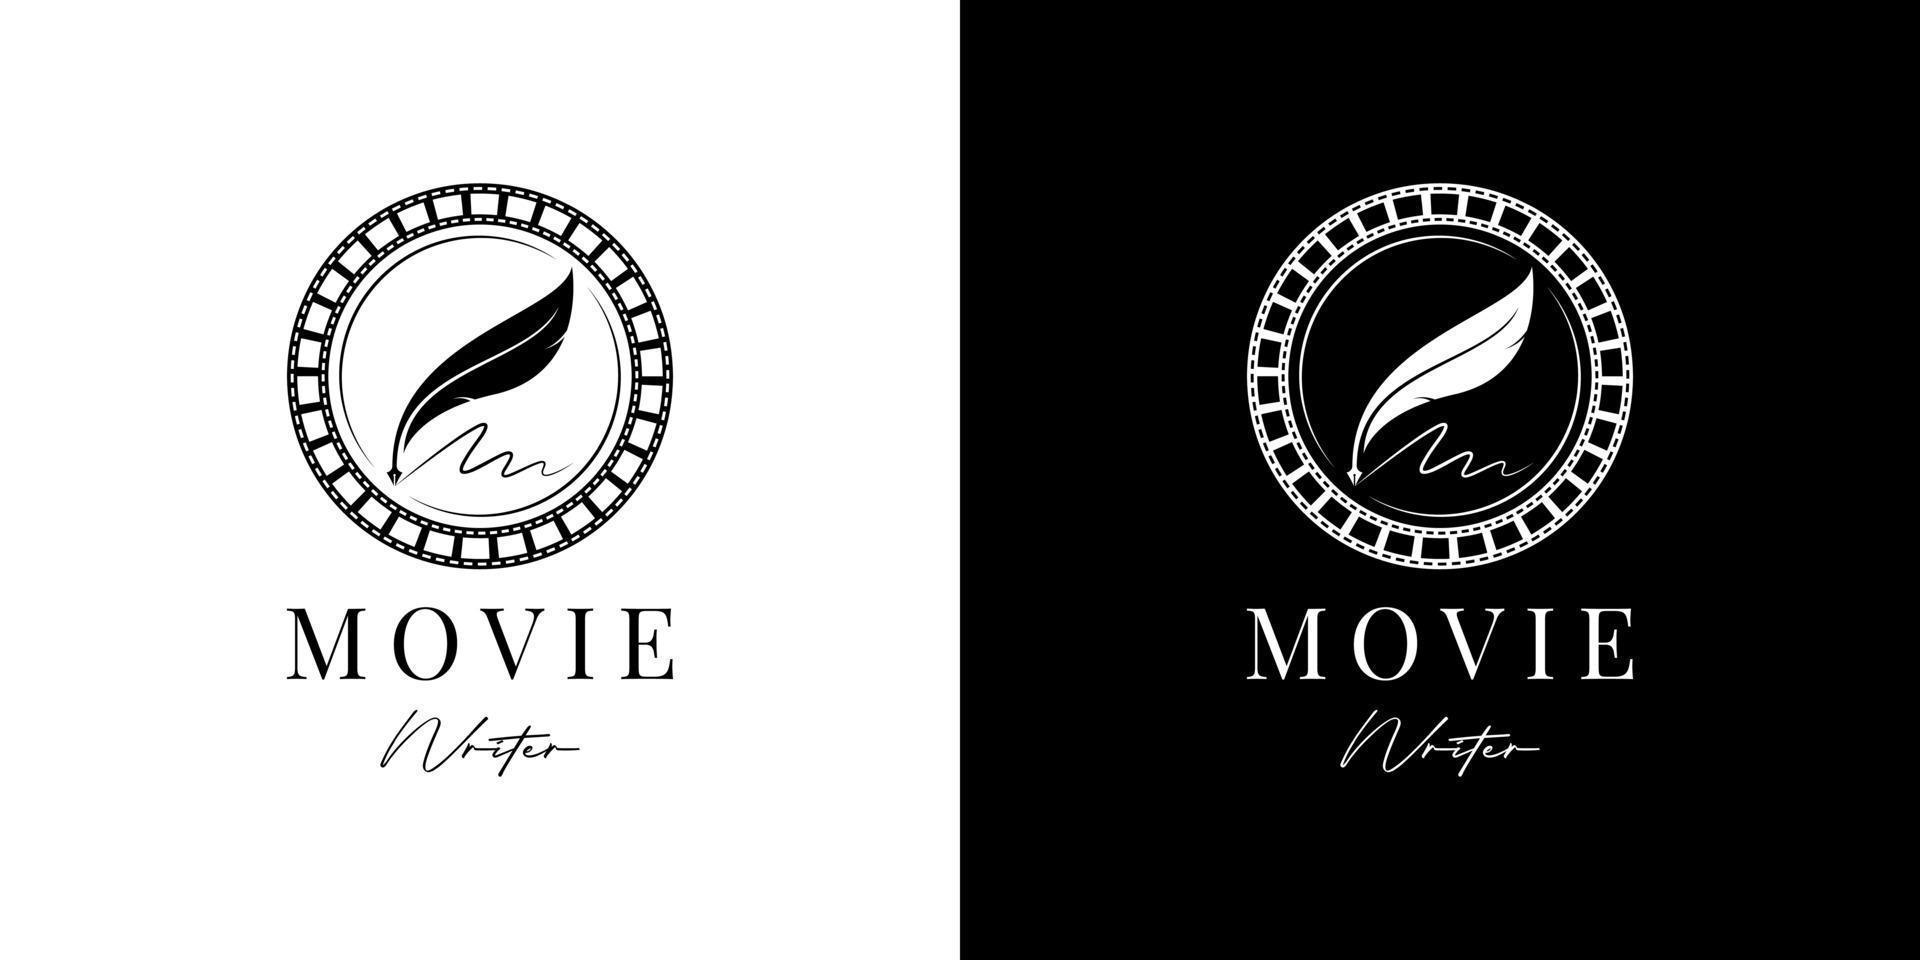 filmschrijver bioscoopfilmproductie met filmstrip en ganzenveer pen logo-ontwerp vector